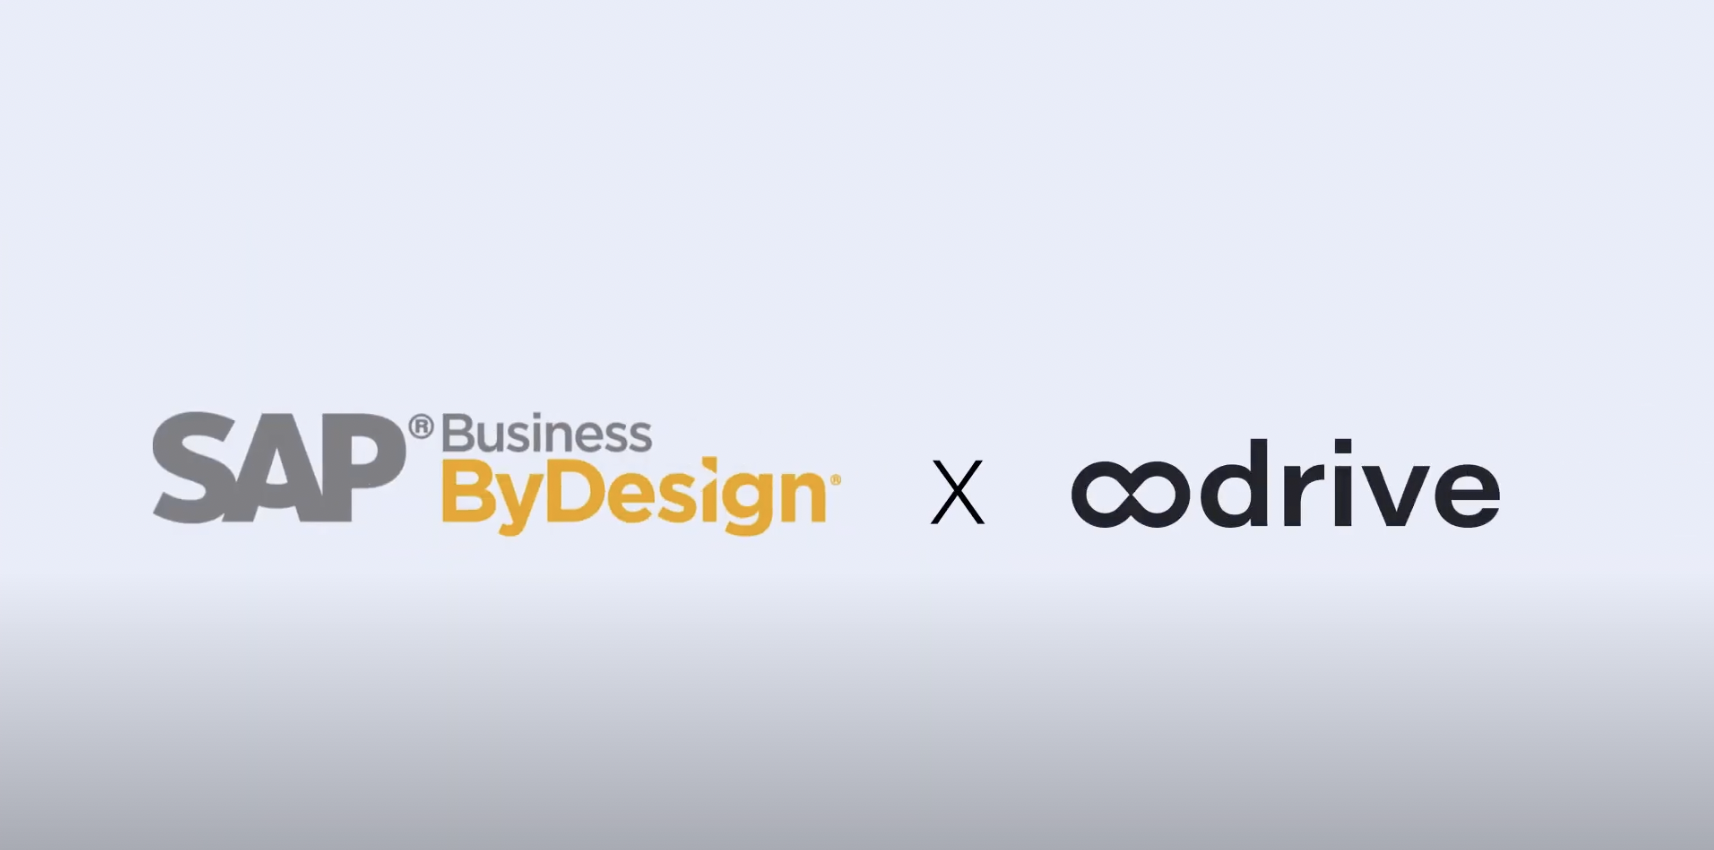 Sileron partenaire de SAP Business ByDesign et signature électronique Oodrive